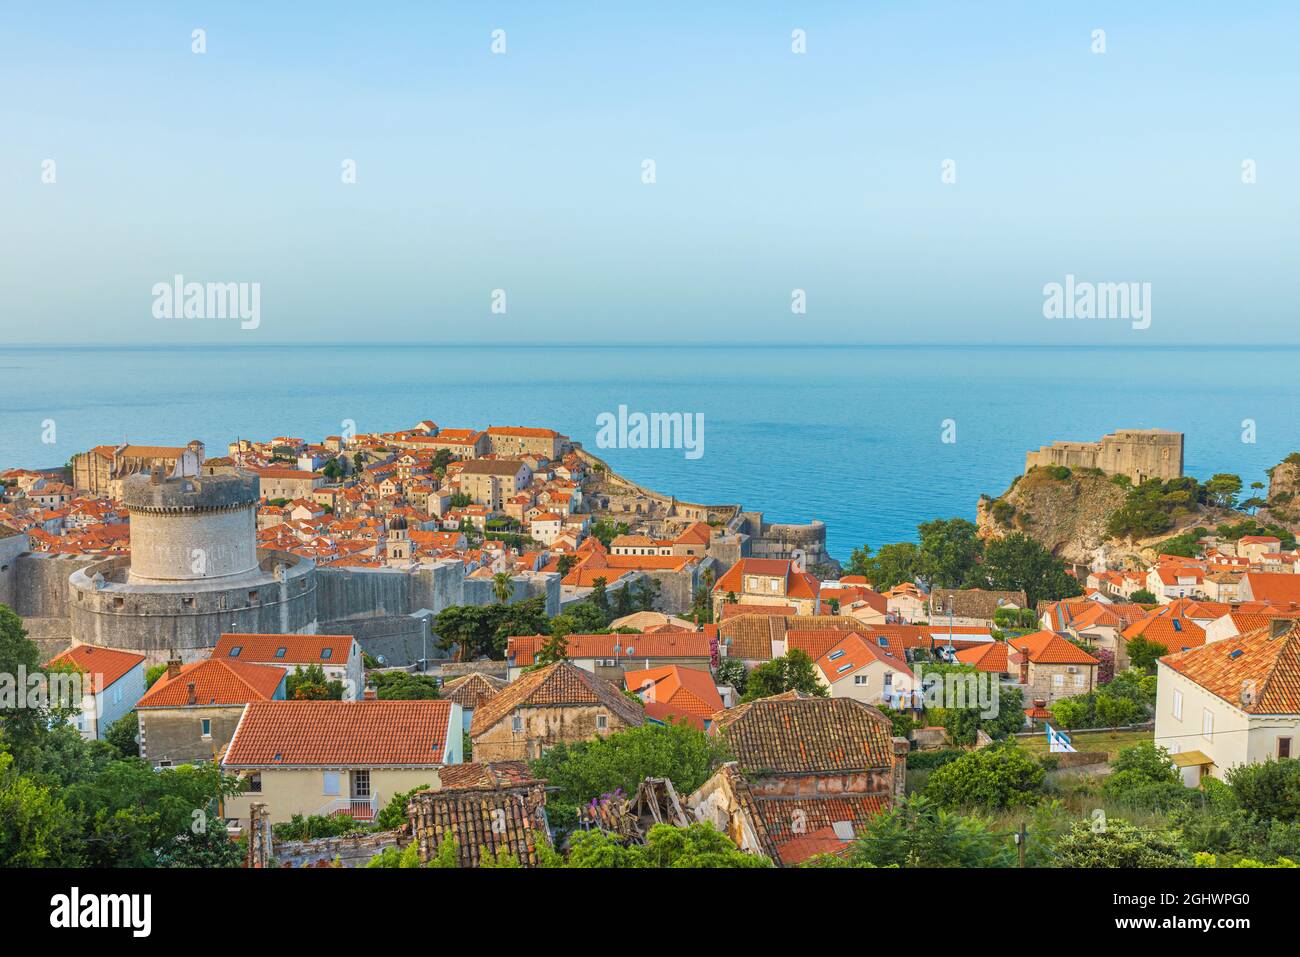 Vista aerea della città vecchia di Dubrovnik, Croazia con tetti, mura della città, forte Lovrijenac e mare Adriatico. Destinazione estiva in Europa Foto Stock